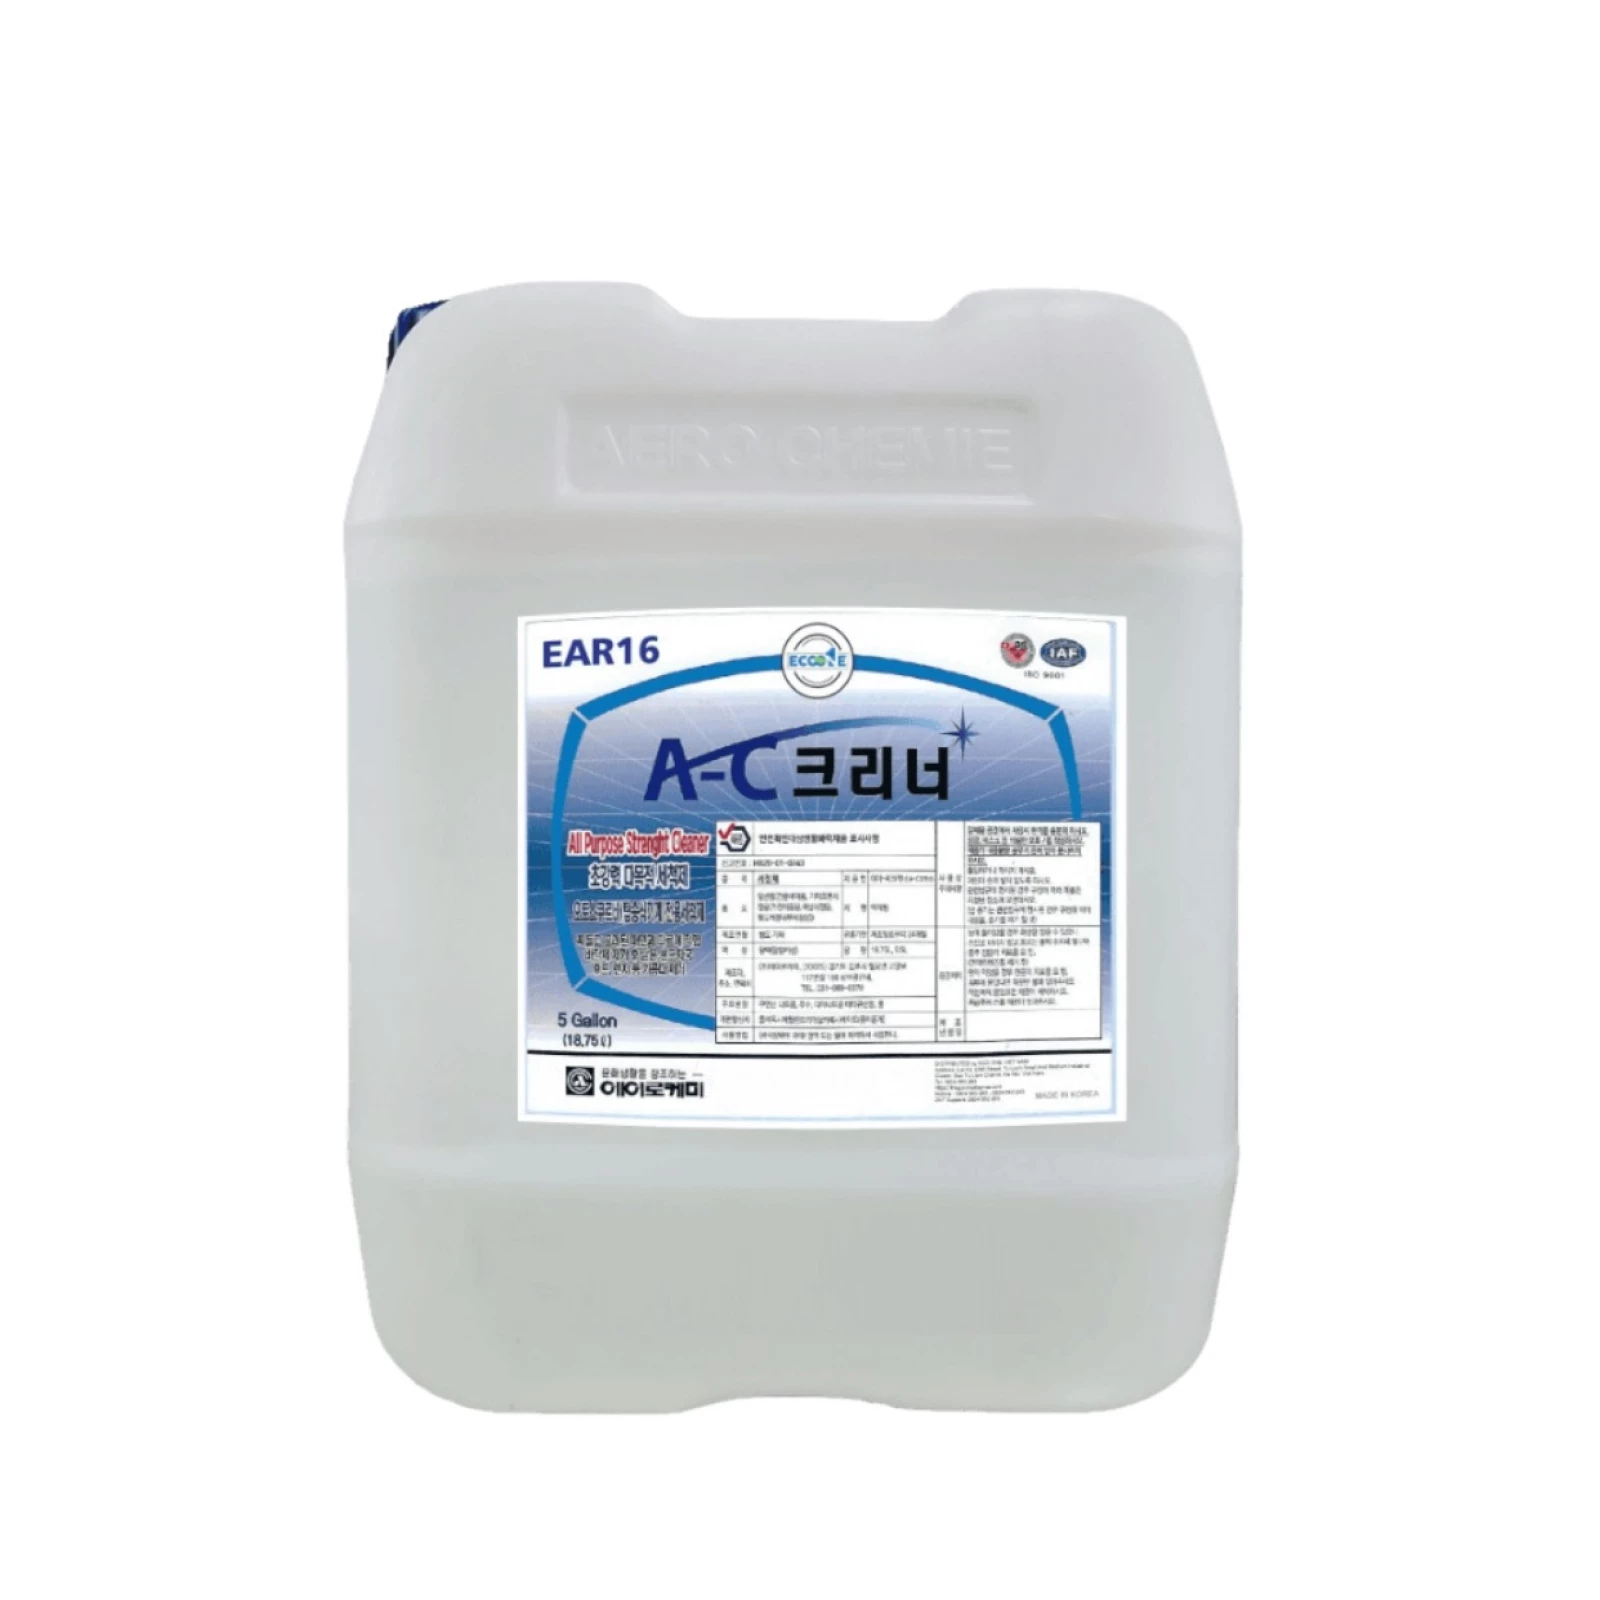 Hóa chất tẩy rửa dầu mỡ nhớt công nghiệp EAR16 A-C CLEANER